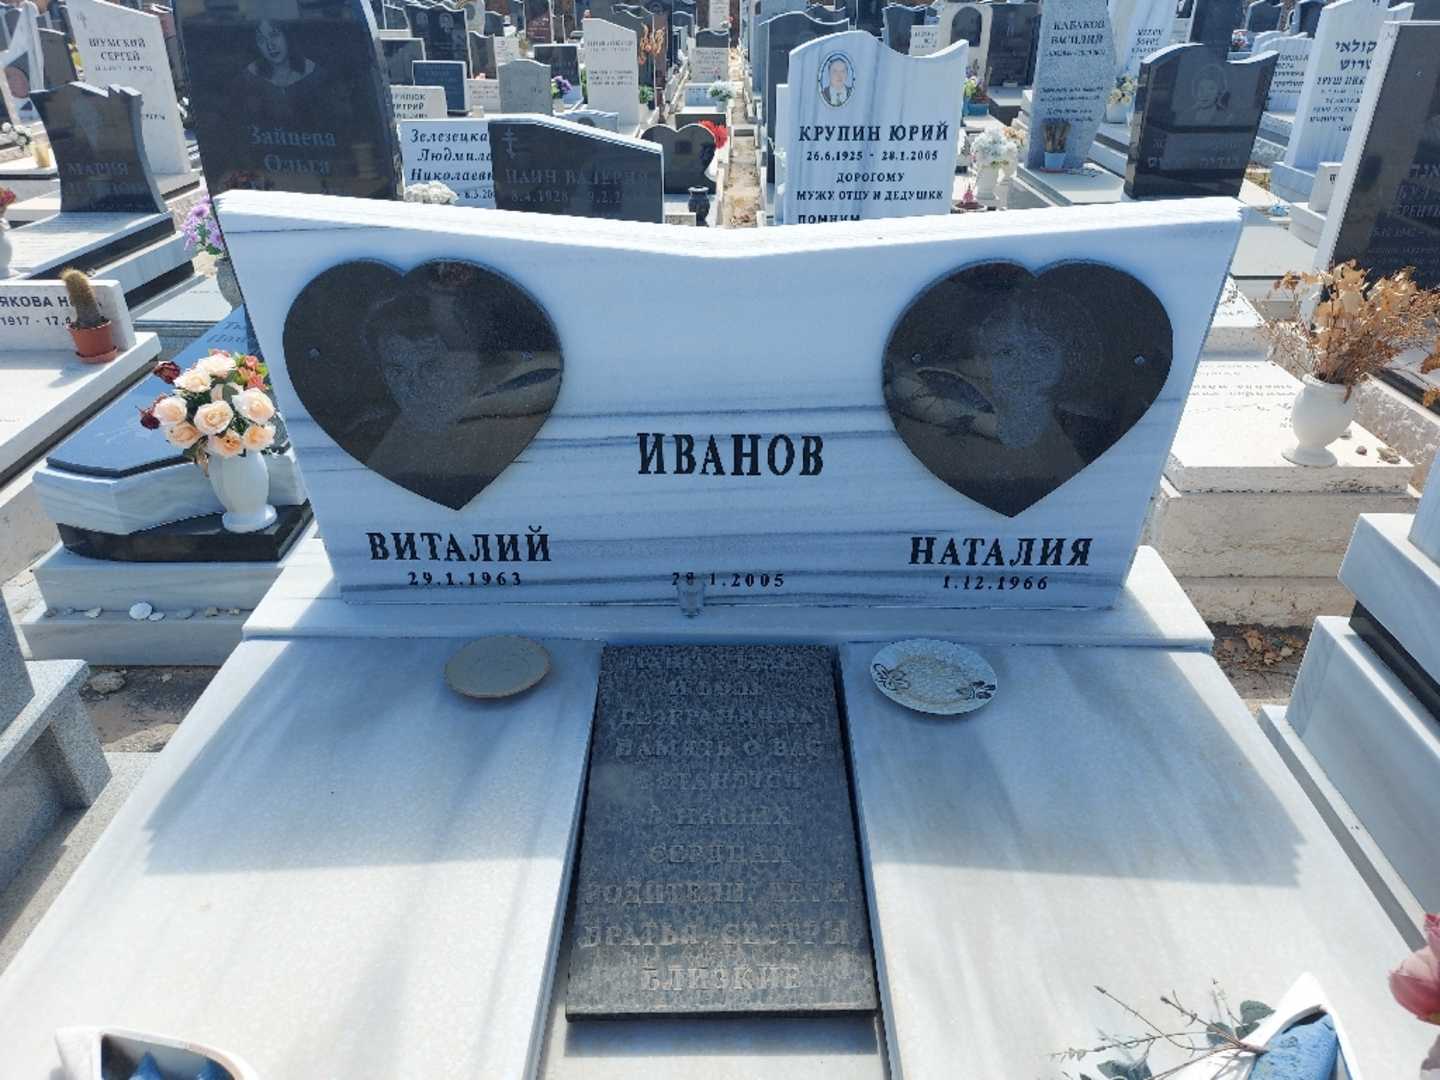 קברו של ויטלי איוונוב. תמונה 1